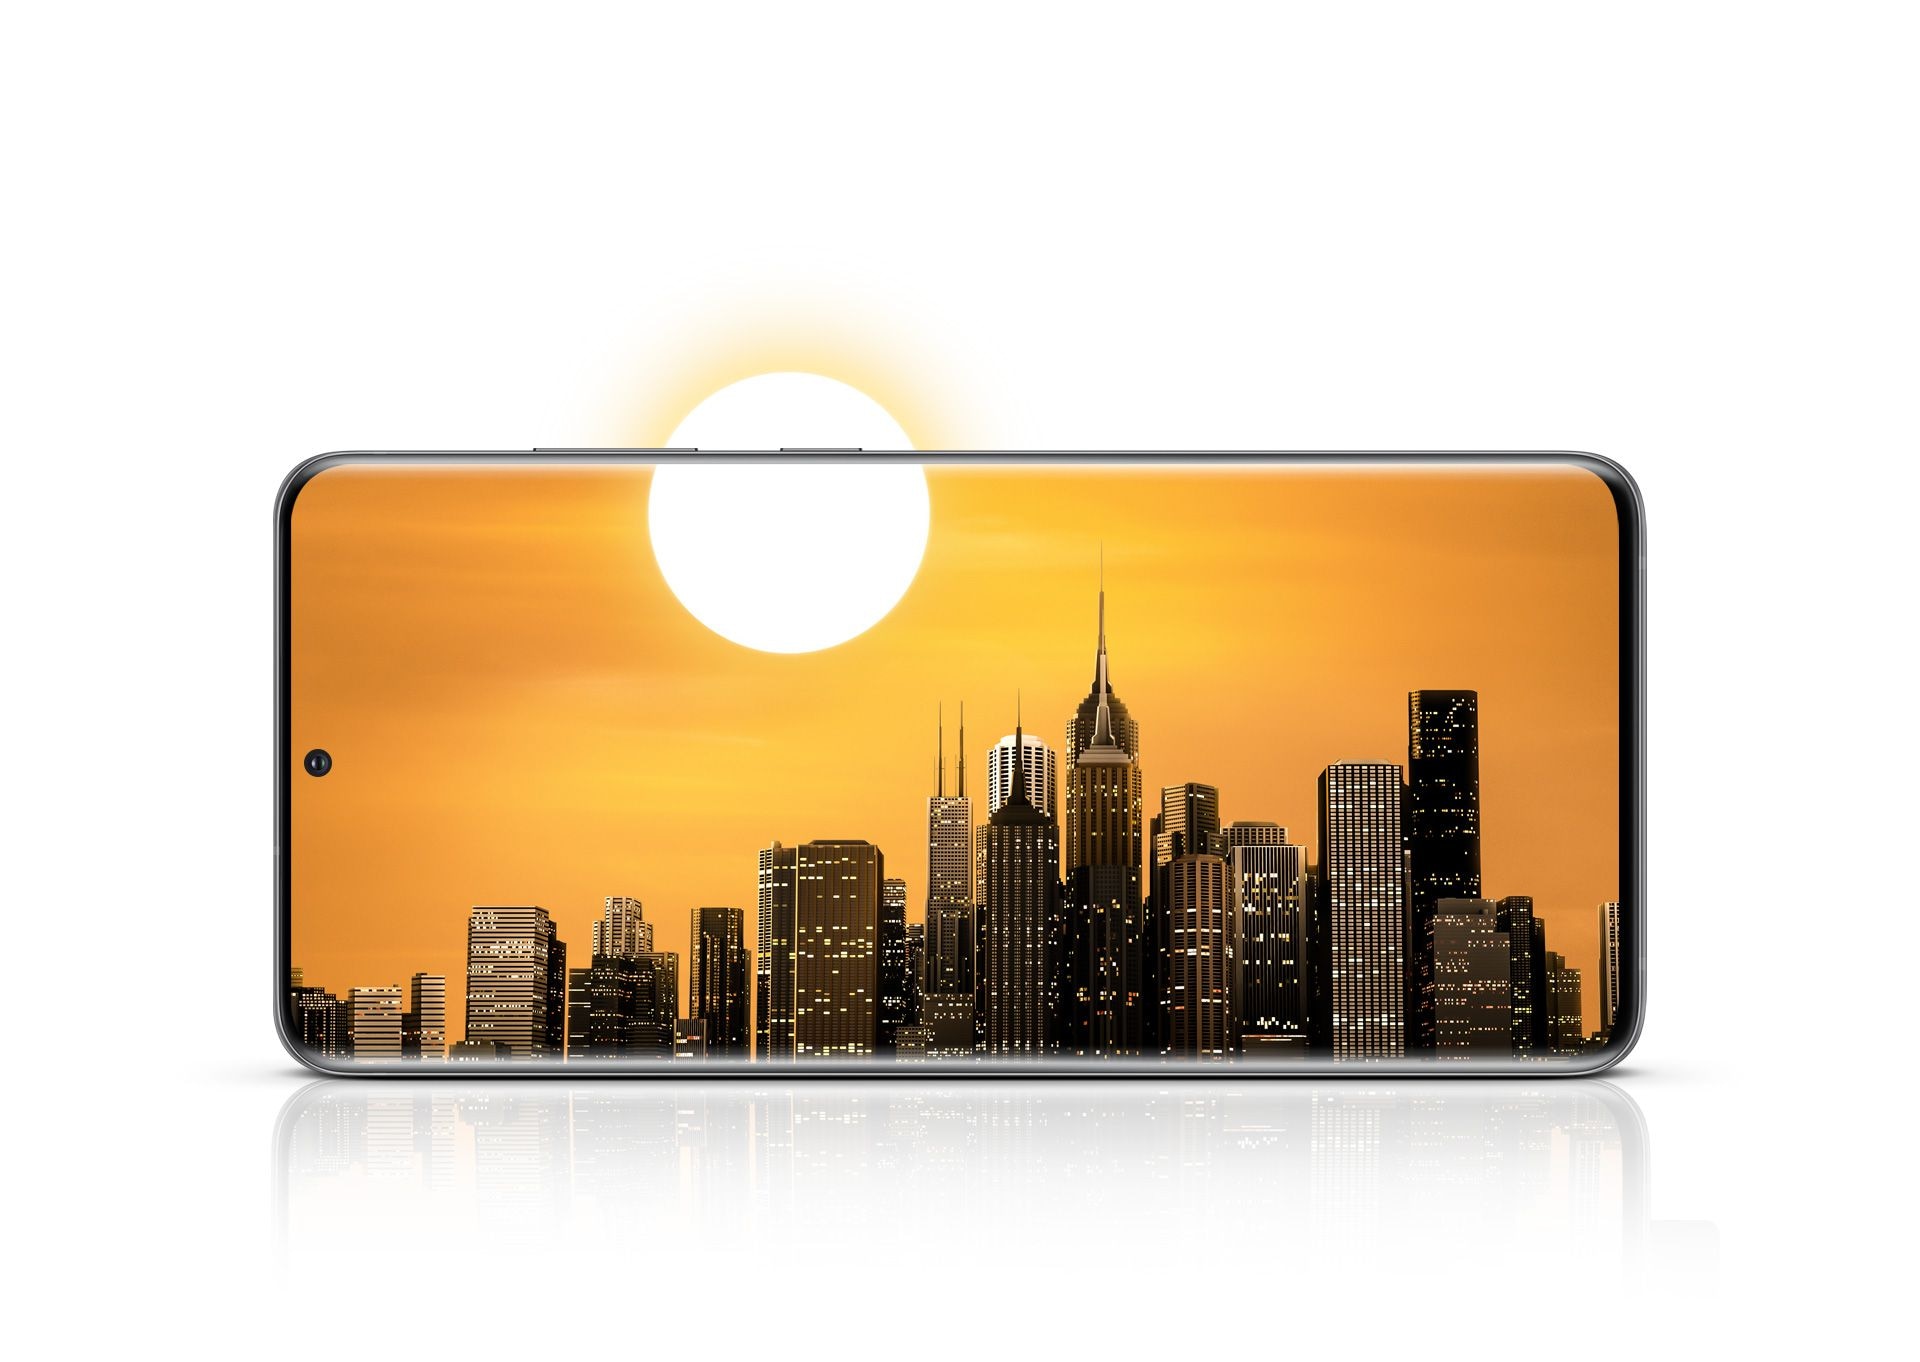 Das Galaxy S20 Ultra 5G wird von vorne im Querformat mit einer Stadt-Skyline auf dem Display gezeigt. Die Sonne befindet sich zur Hälfte im Display und zur Hälfte außerhalb des Displays, um zu verdeutlichen, wie lange der ausdauernde Akku durchhalten kann.